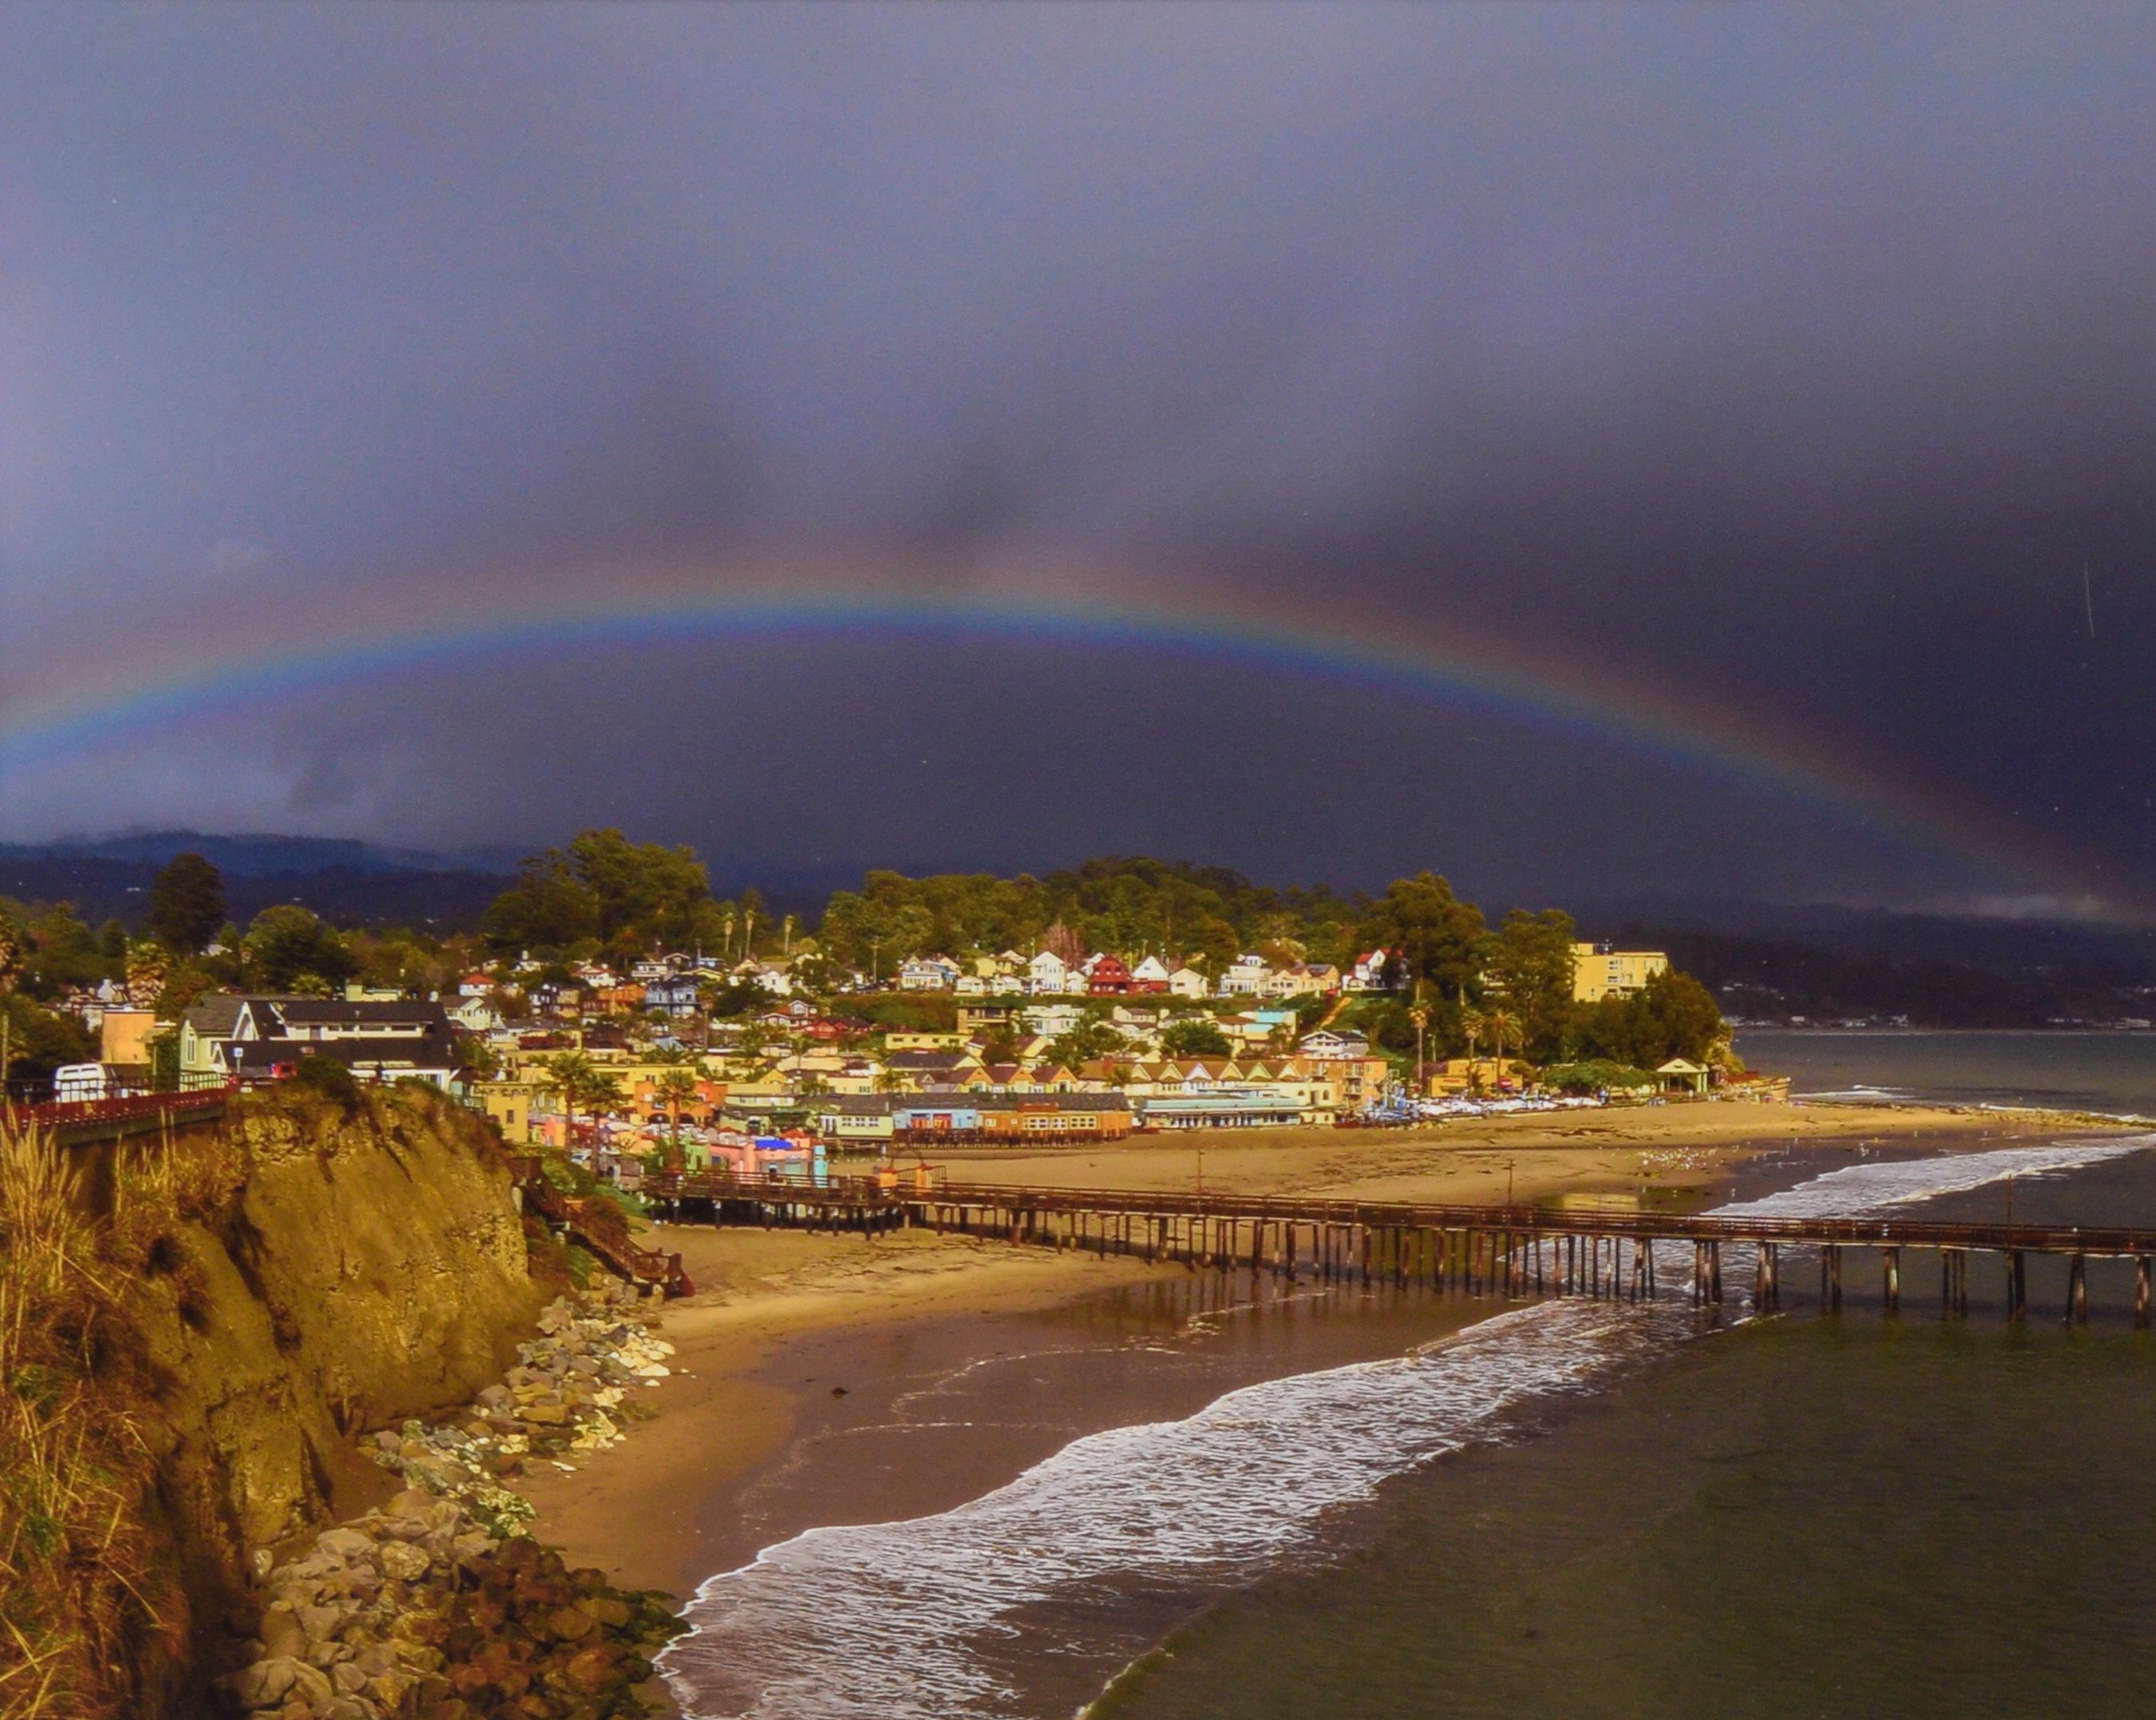 Regenbogen über Capitola Village, Santa Cruz – farbige Fotografie – Photograph von John F. Hunter